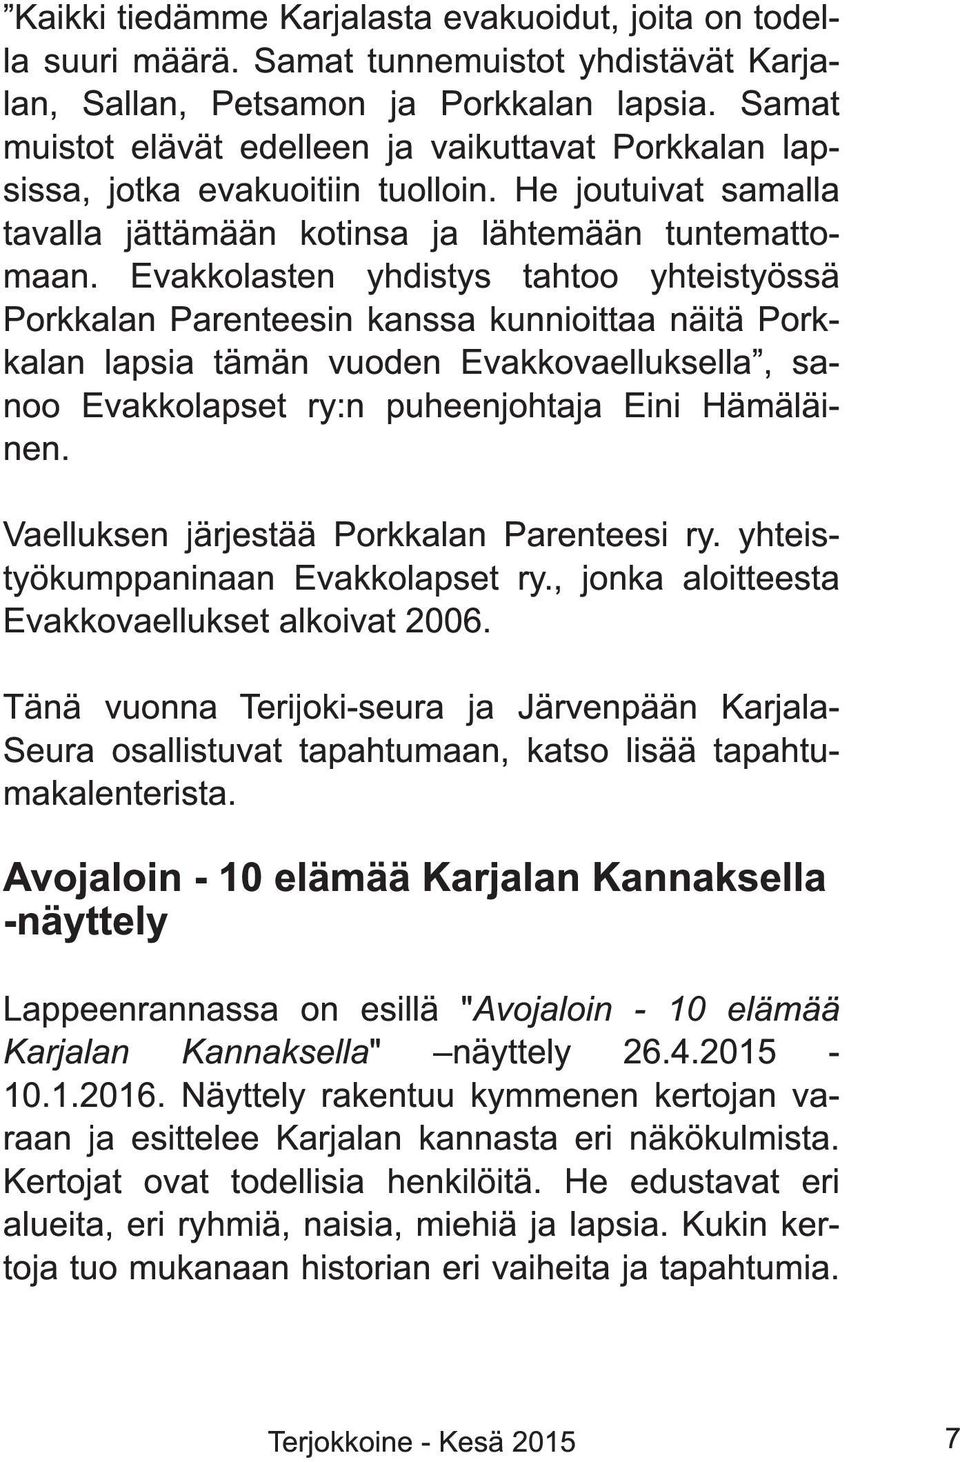 Evakkolasten yhdistys tahtoo yhteistyössä Porkkalan Parenteesin kanssa kunnioittaa näitä Porkkalan lapsia tämän vuoden Evakkovaelluksella, sanoo Evakkolapset ry:n puheenjohtaja Eini Hämäläinen.